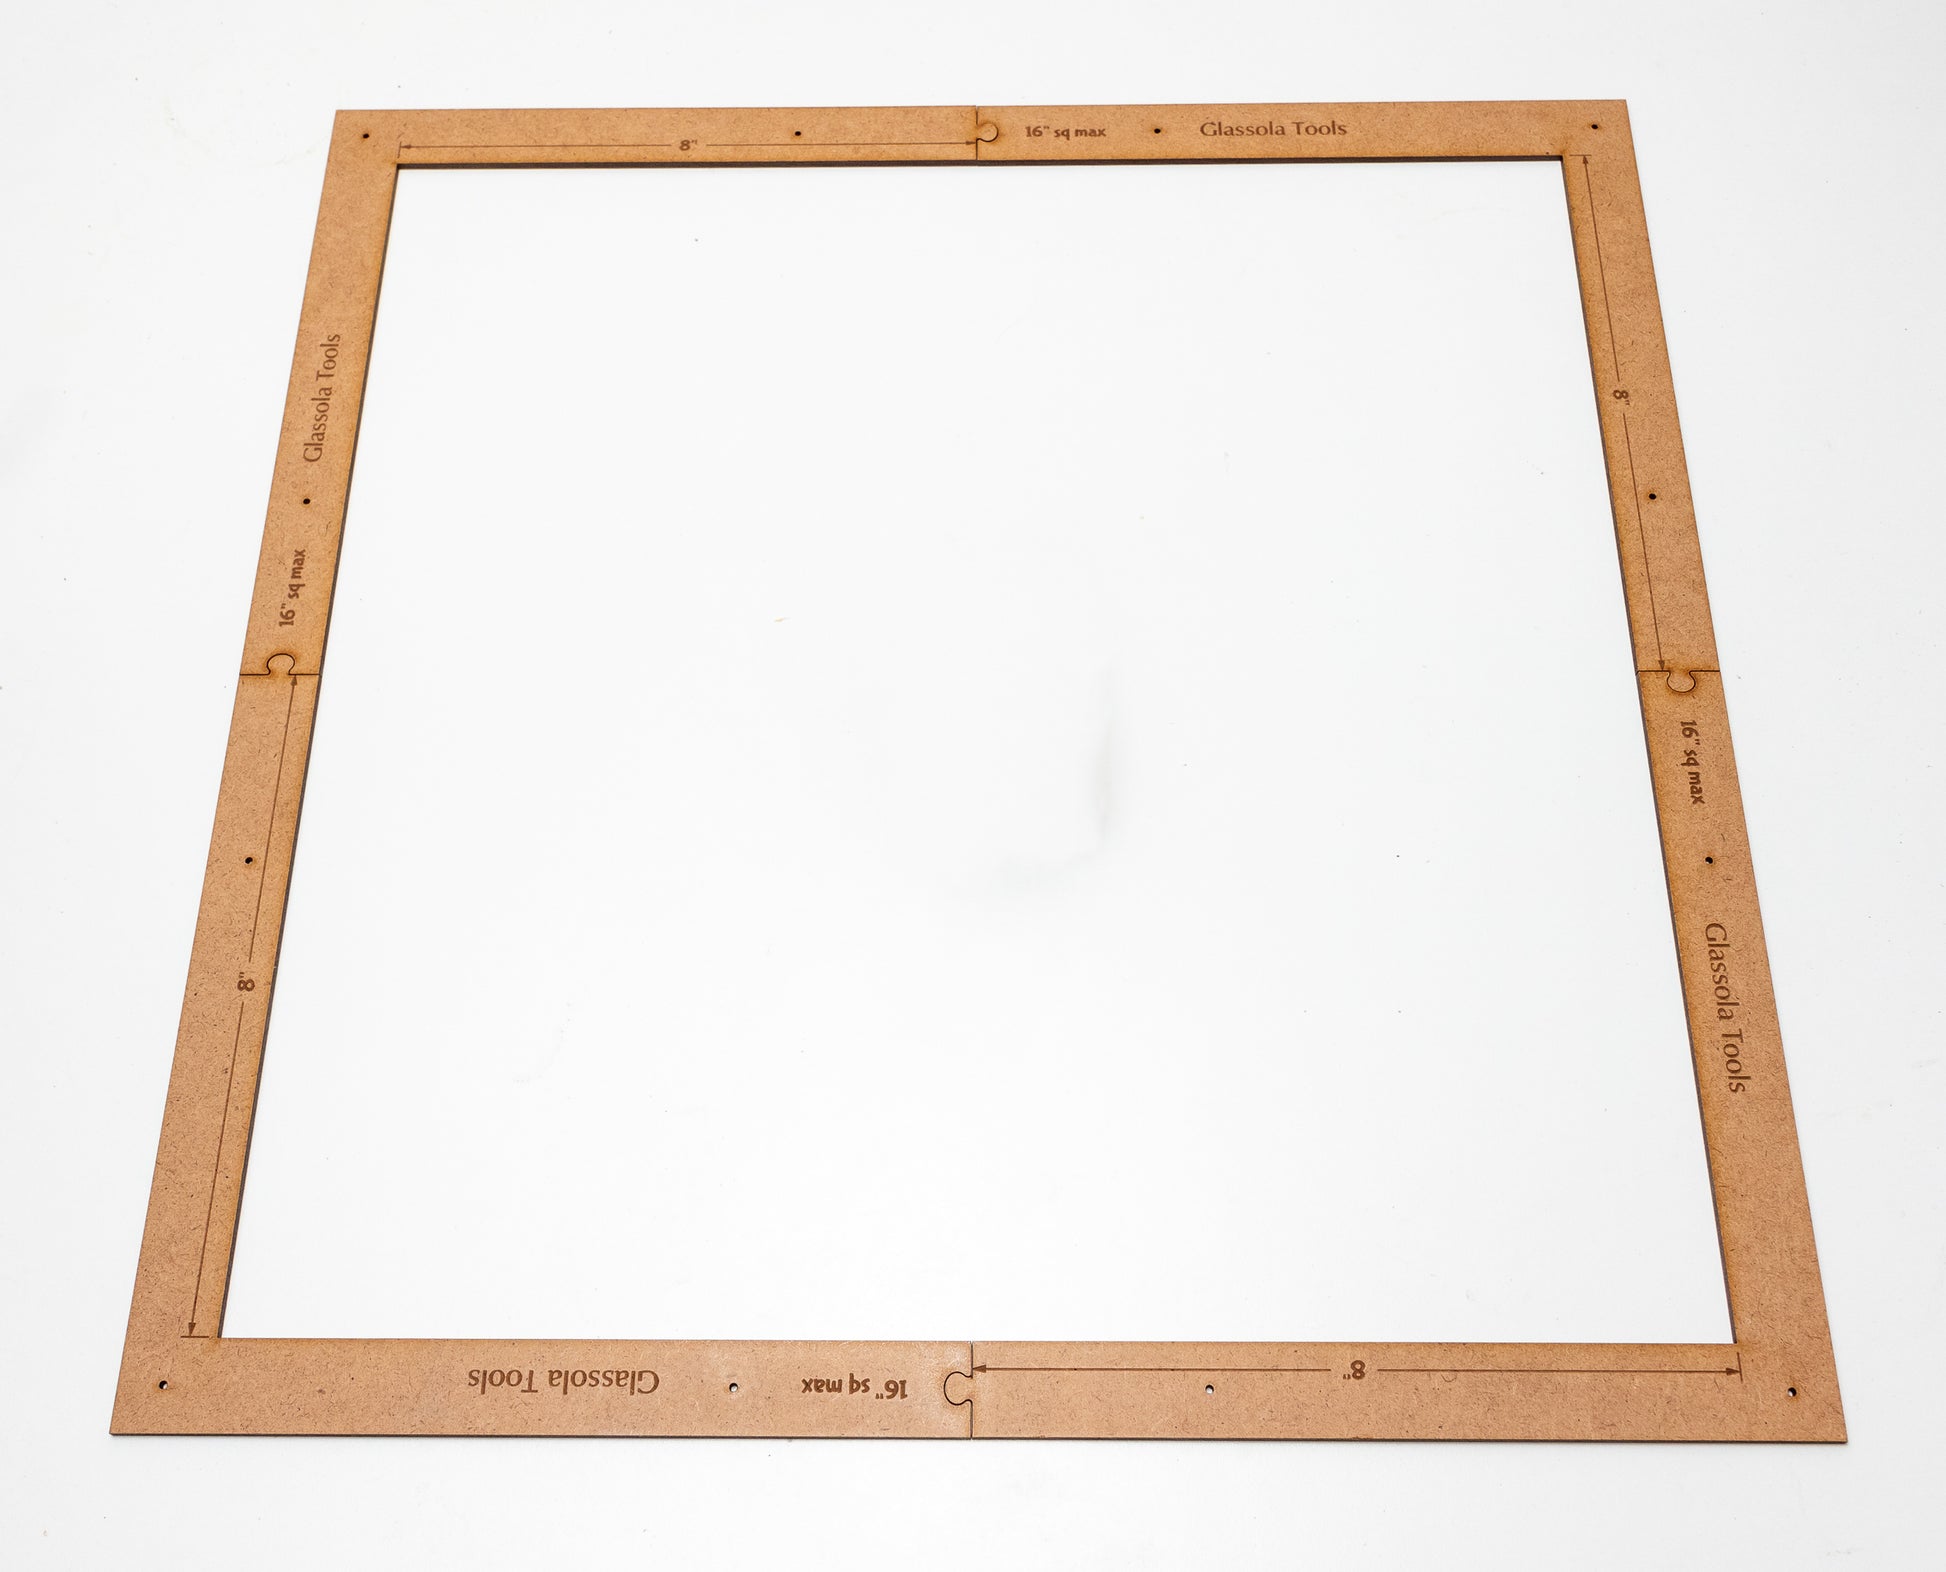 Glassola Tools Large Circle Layout Frame